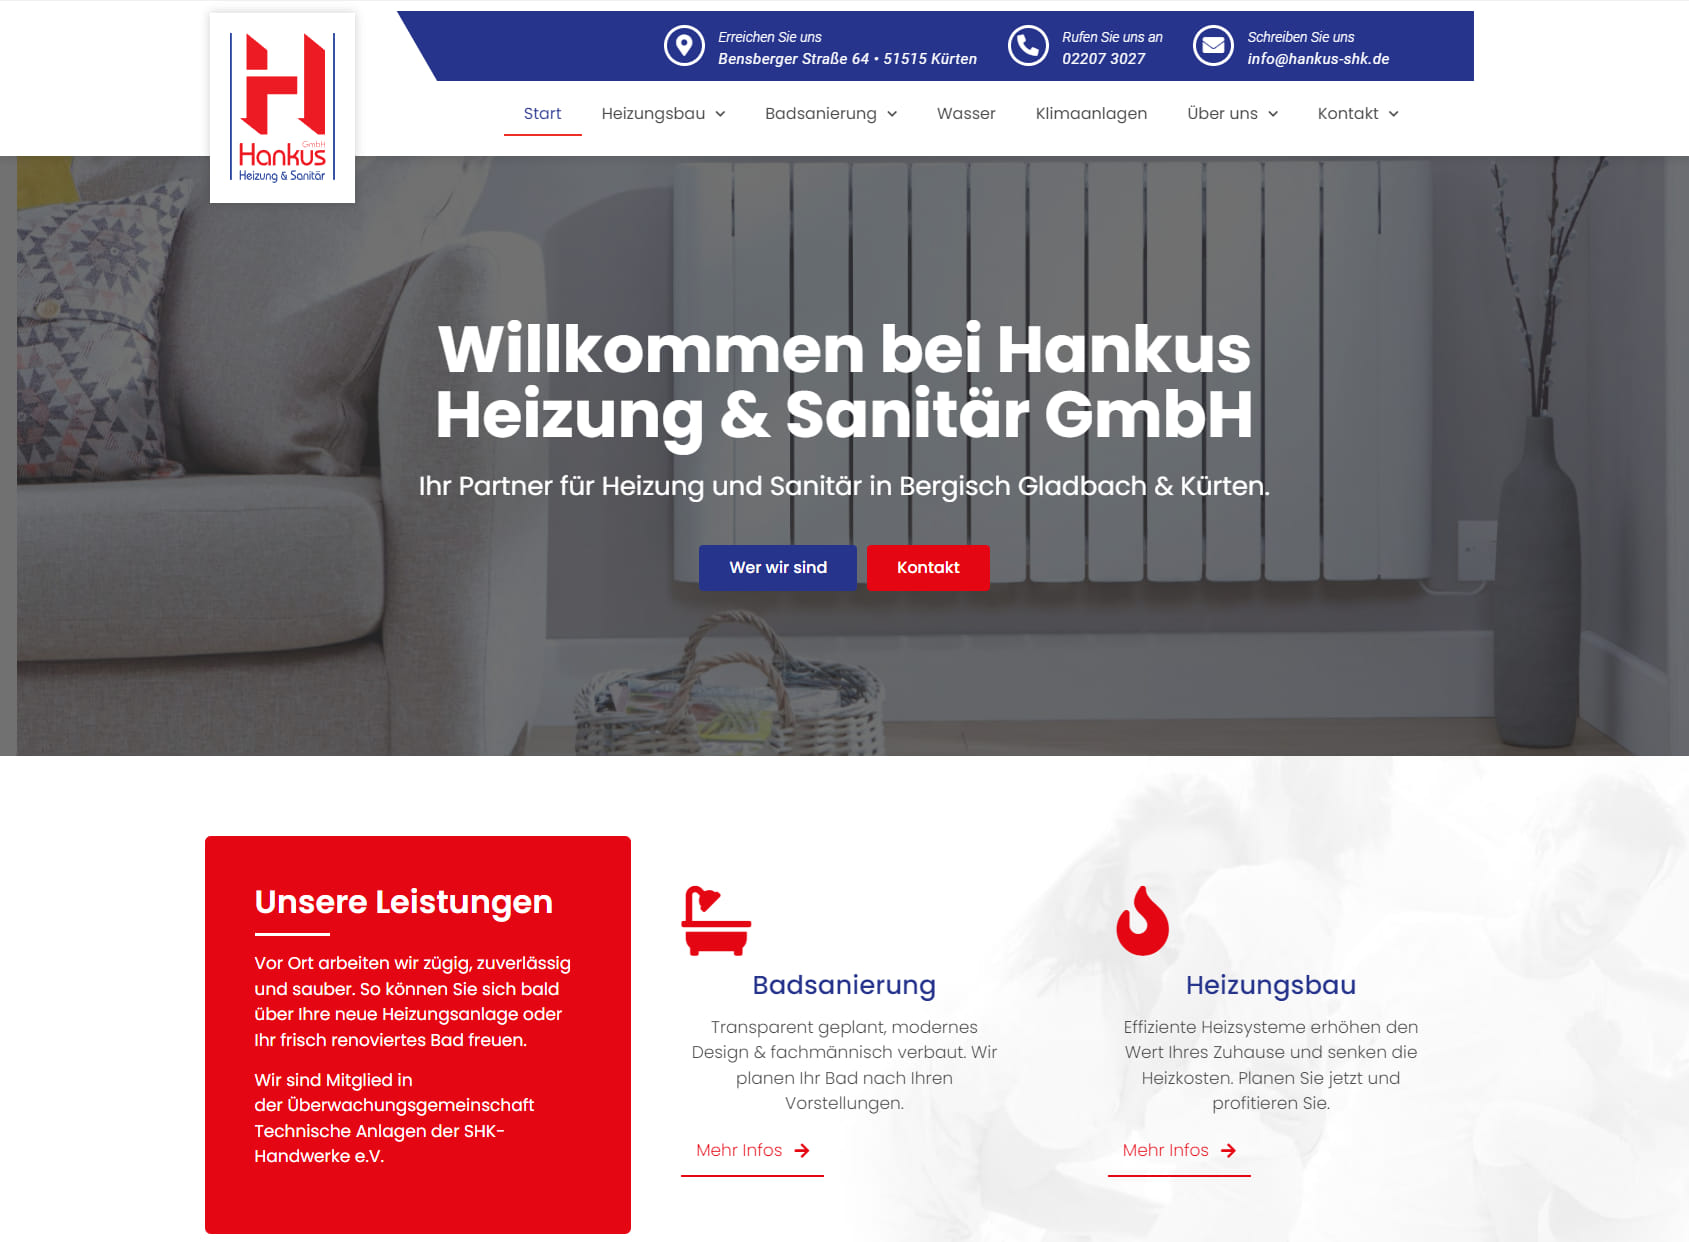 Hankus GmbH Heizung & Sanitär